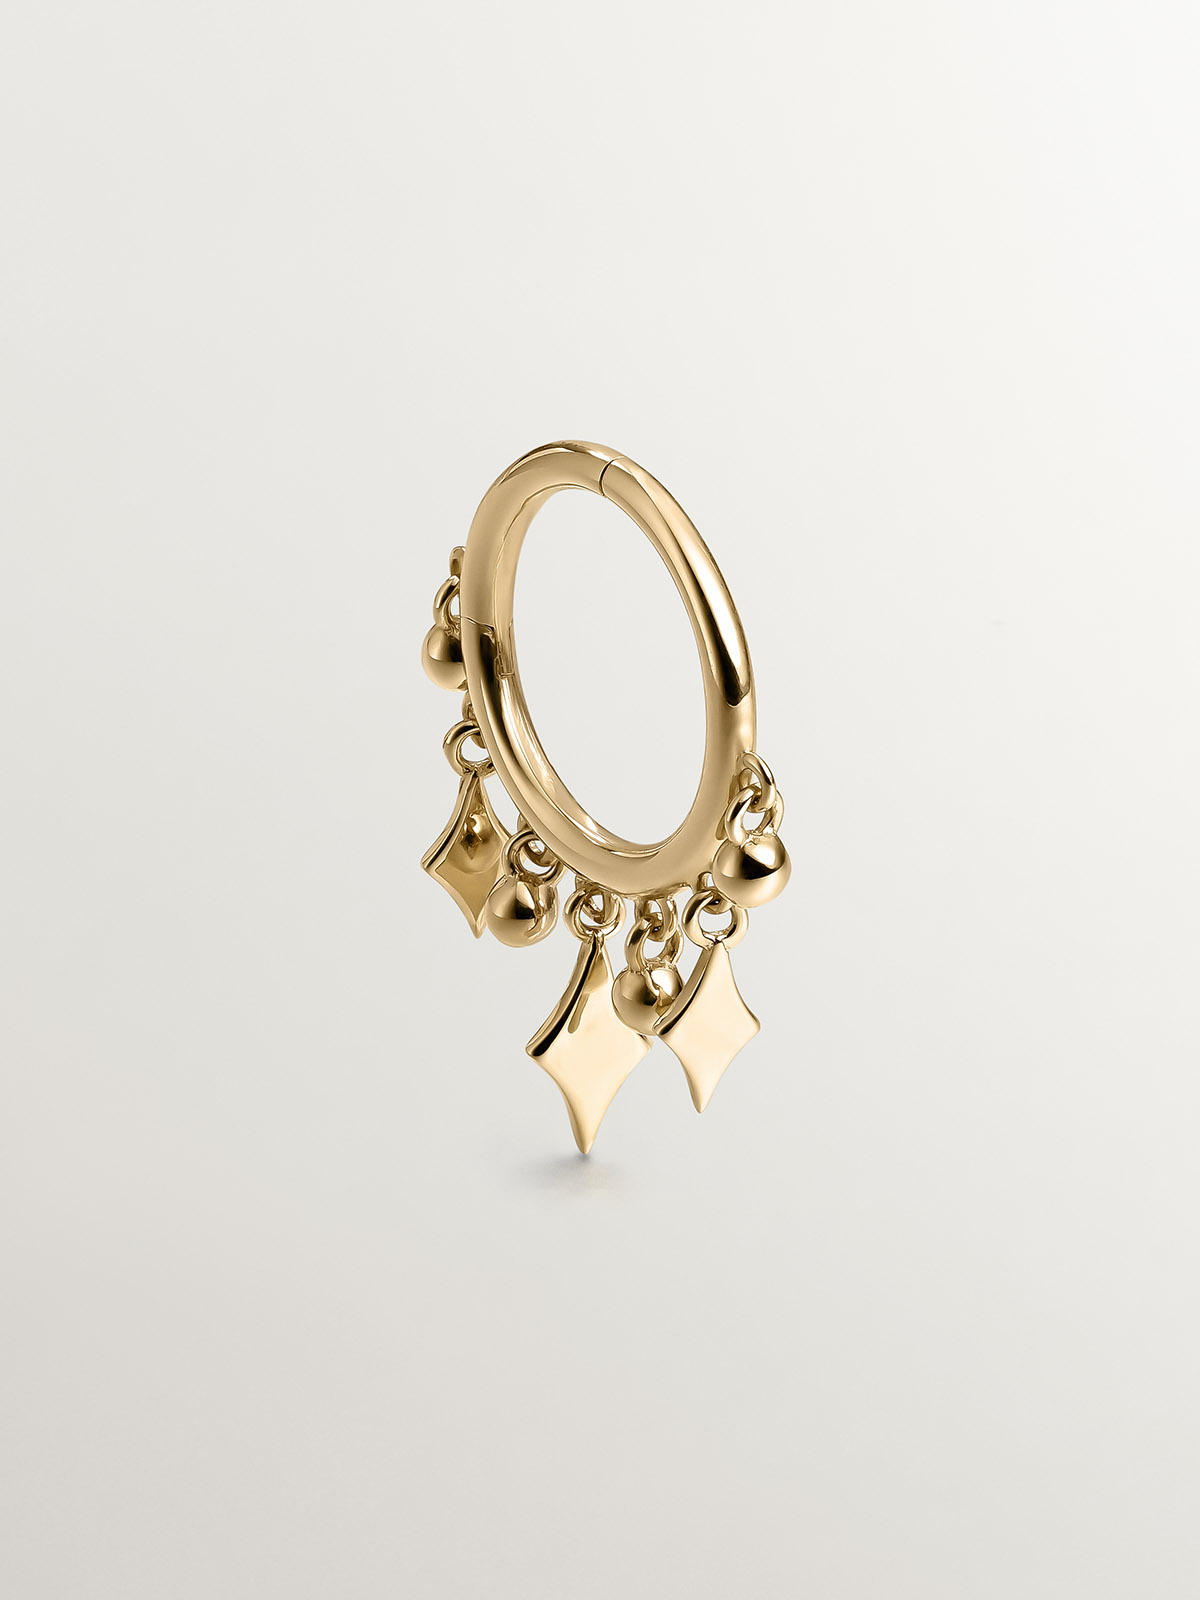 Boucle d'oreille individuelle en forme d'anneau en or jaune 9K avec sphères et losanges.